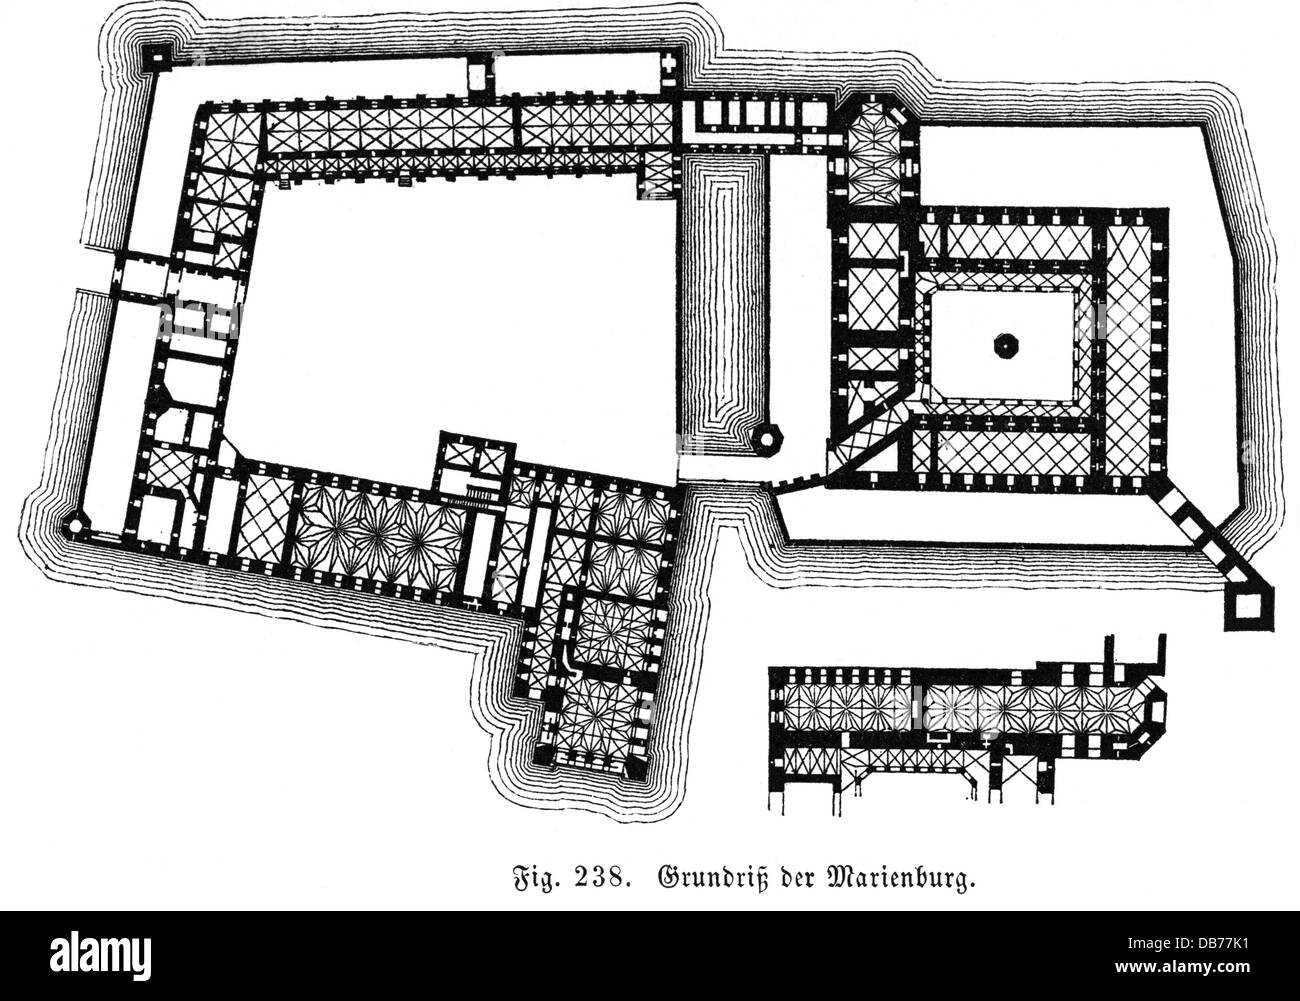 Architektur, Grundrisse, Marienburg, Malbork, Polen, erbaut um 1270 - 1344, zusätzliche-Rights-Clearences-nicht vorhanden Stockfoto